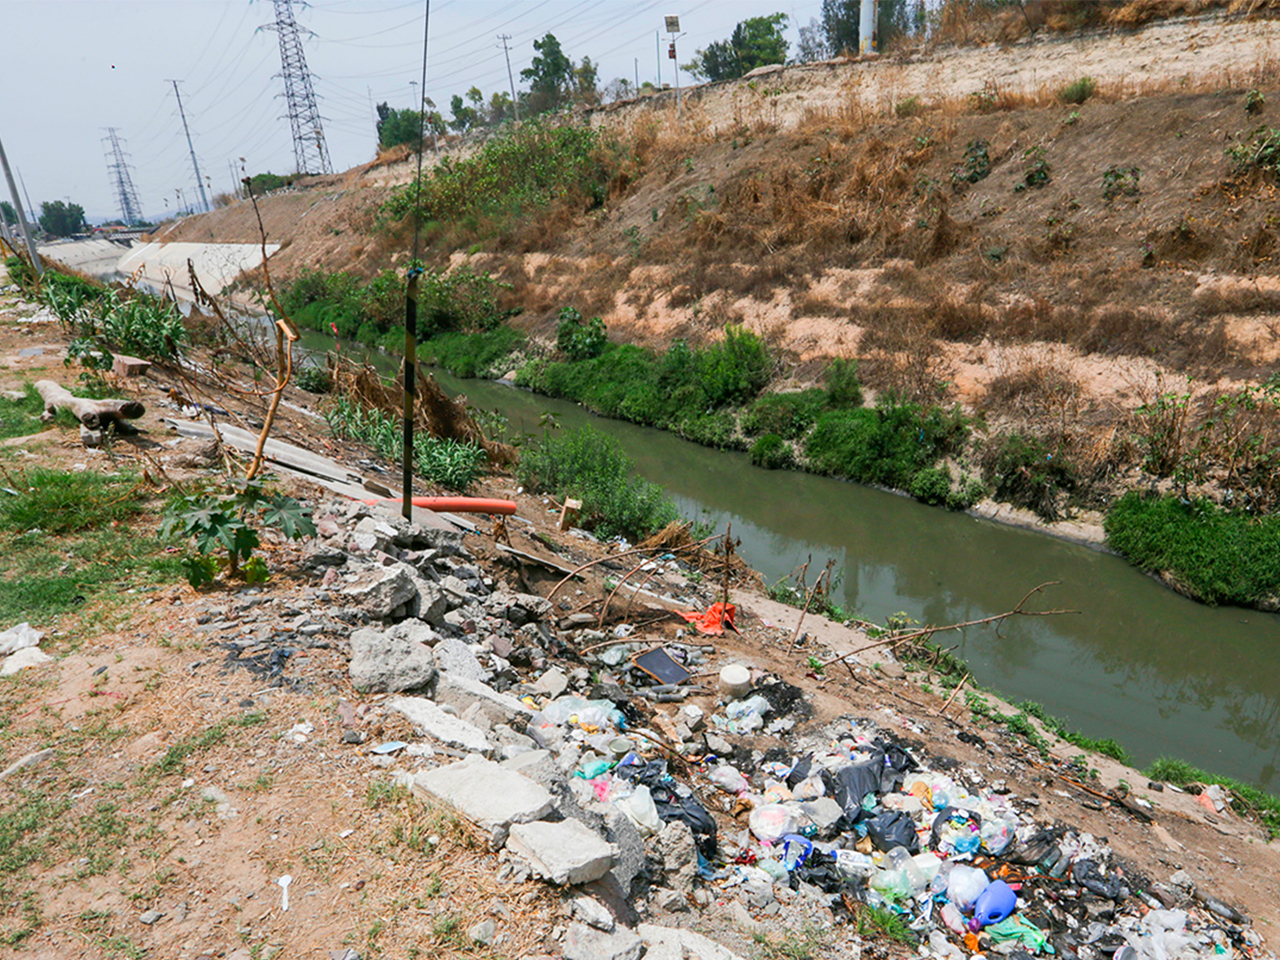 Tiraderos de basura clandestinos, la realidad de vecinos en Cuautitlán